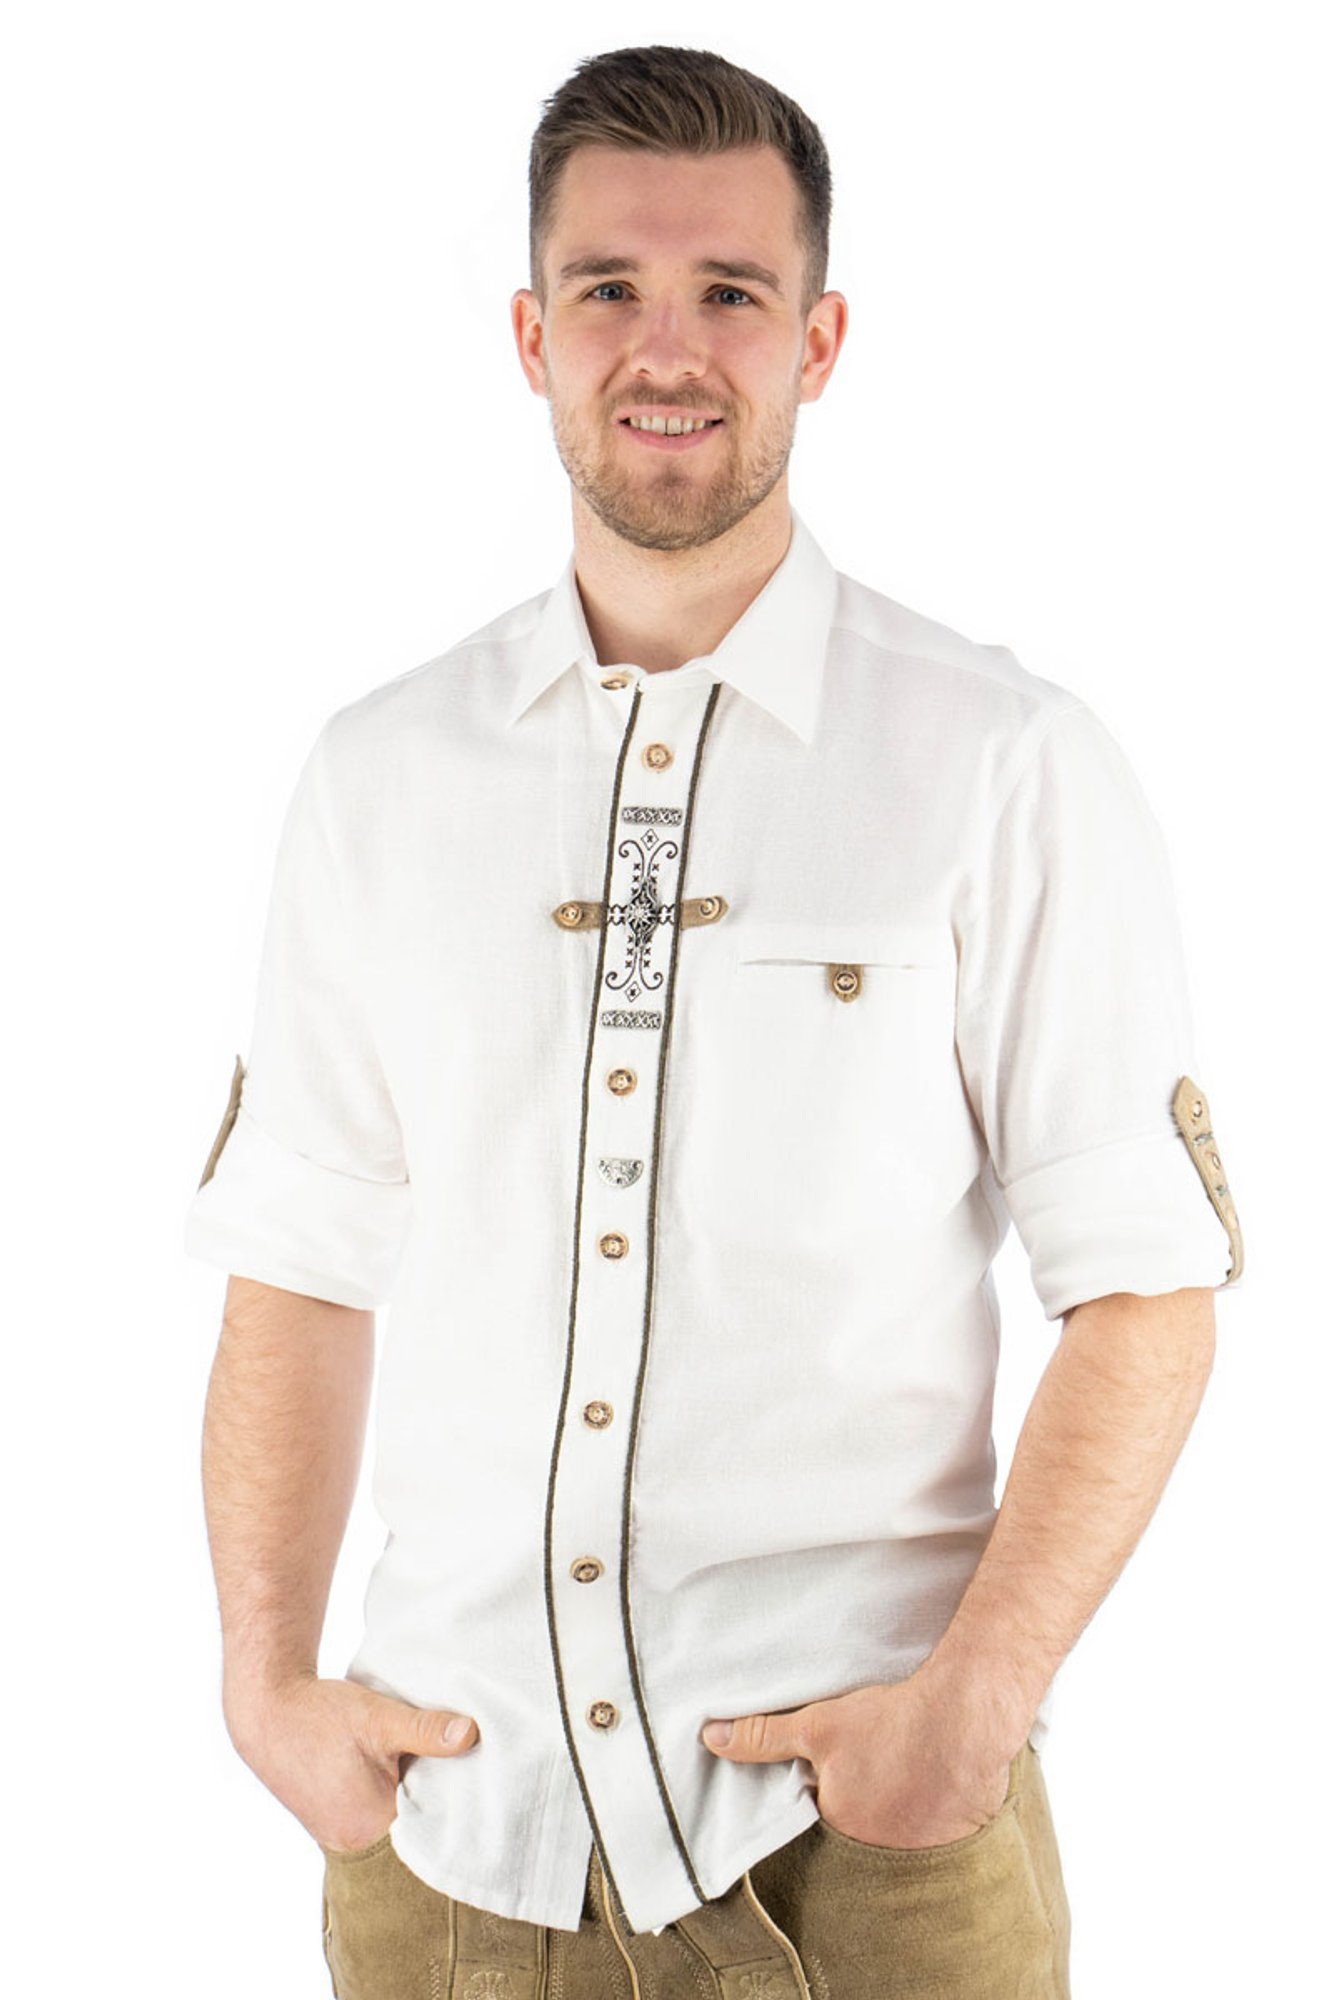 Phegin Knopfleiste Paspeltasche, auf Zierteile Langarmhemd Trachtenhemd der OS-Trachten weiß mit